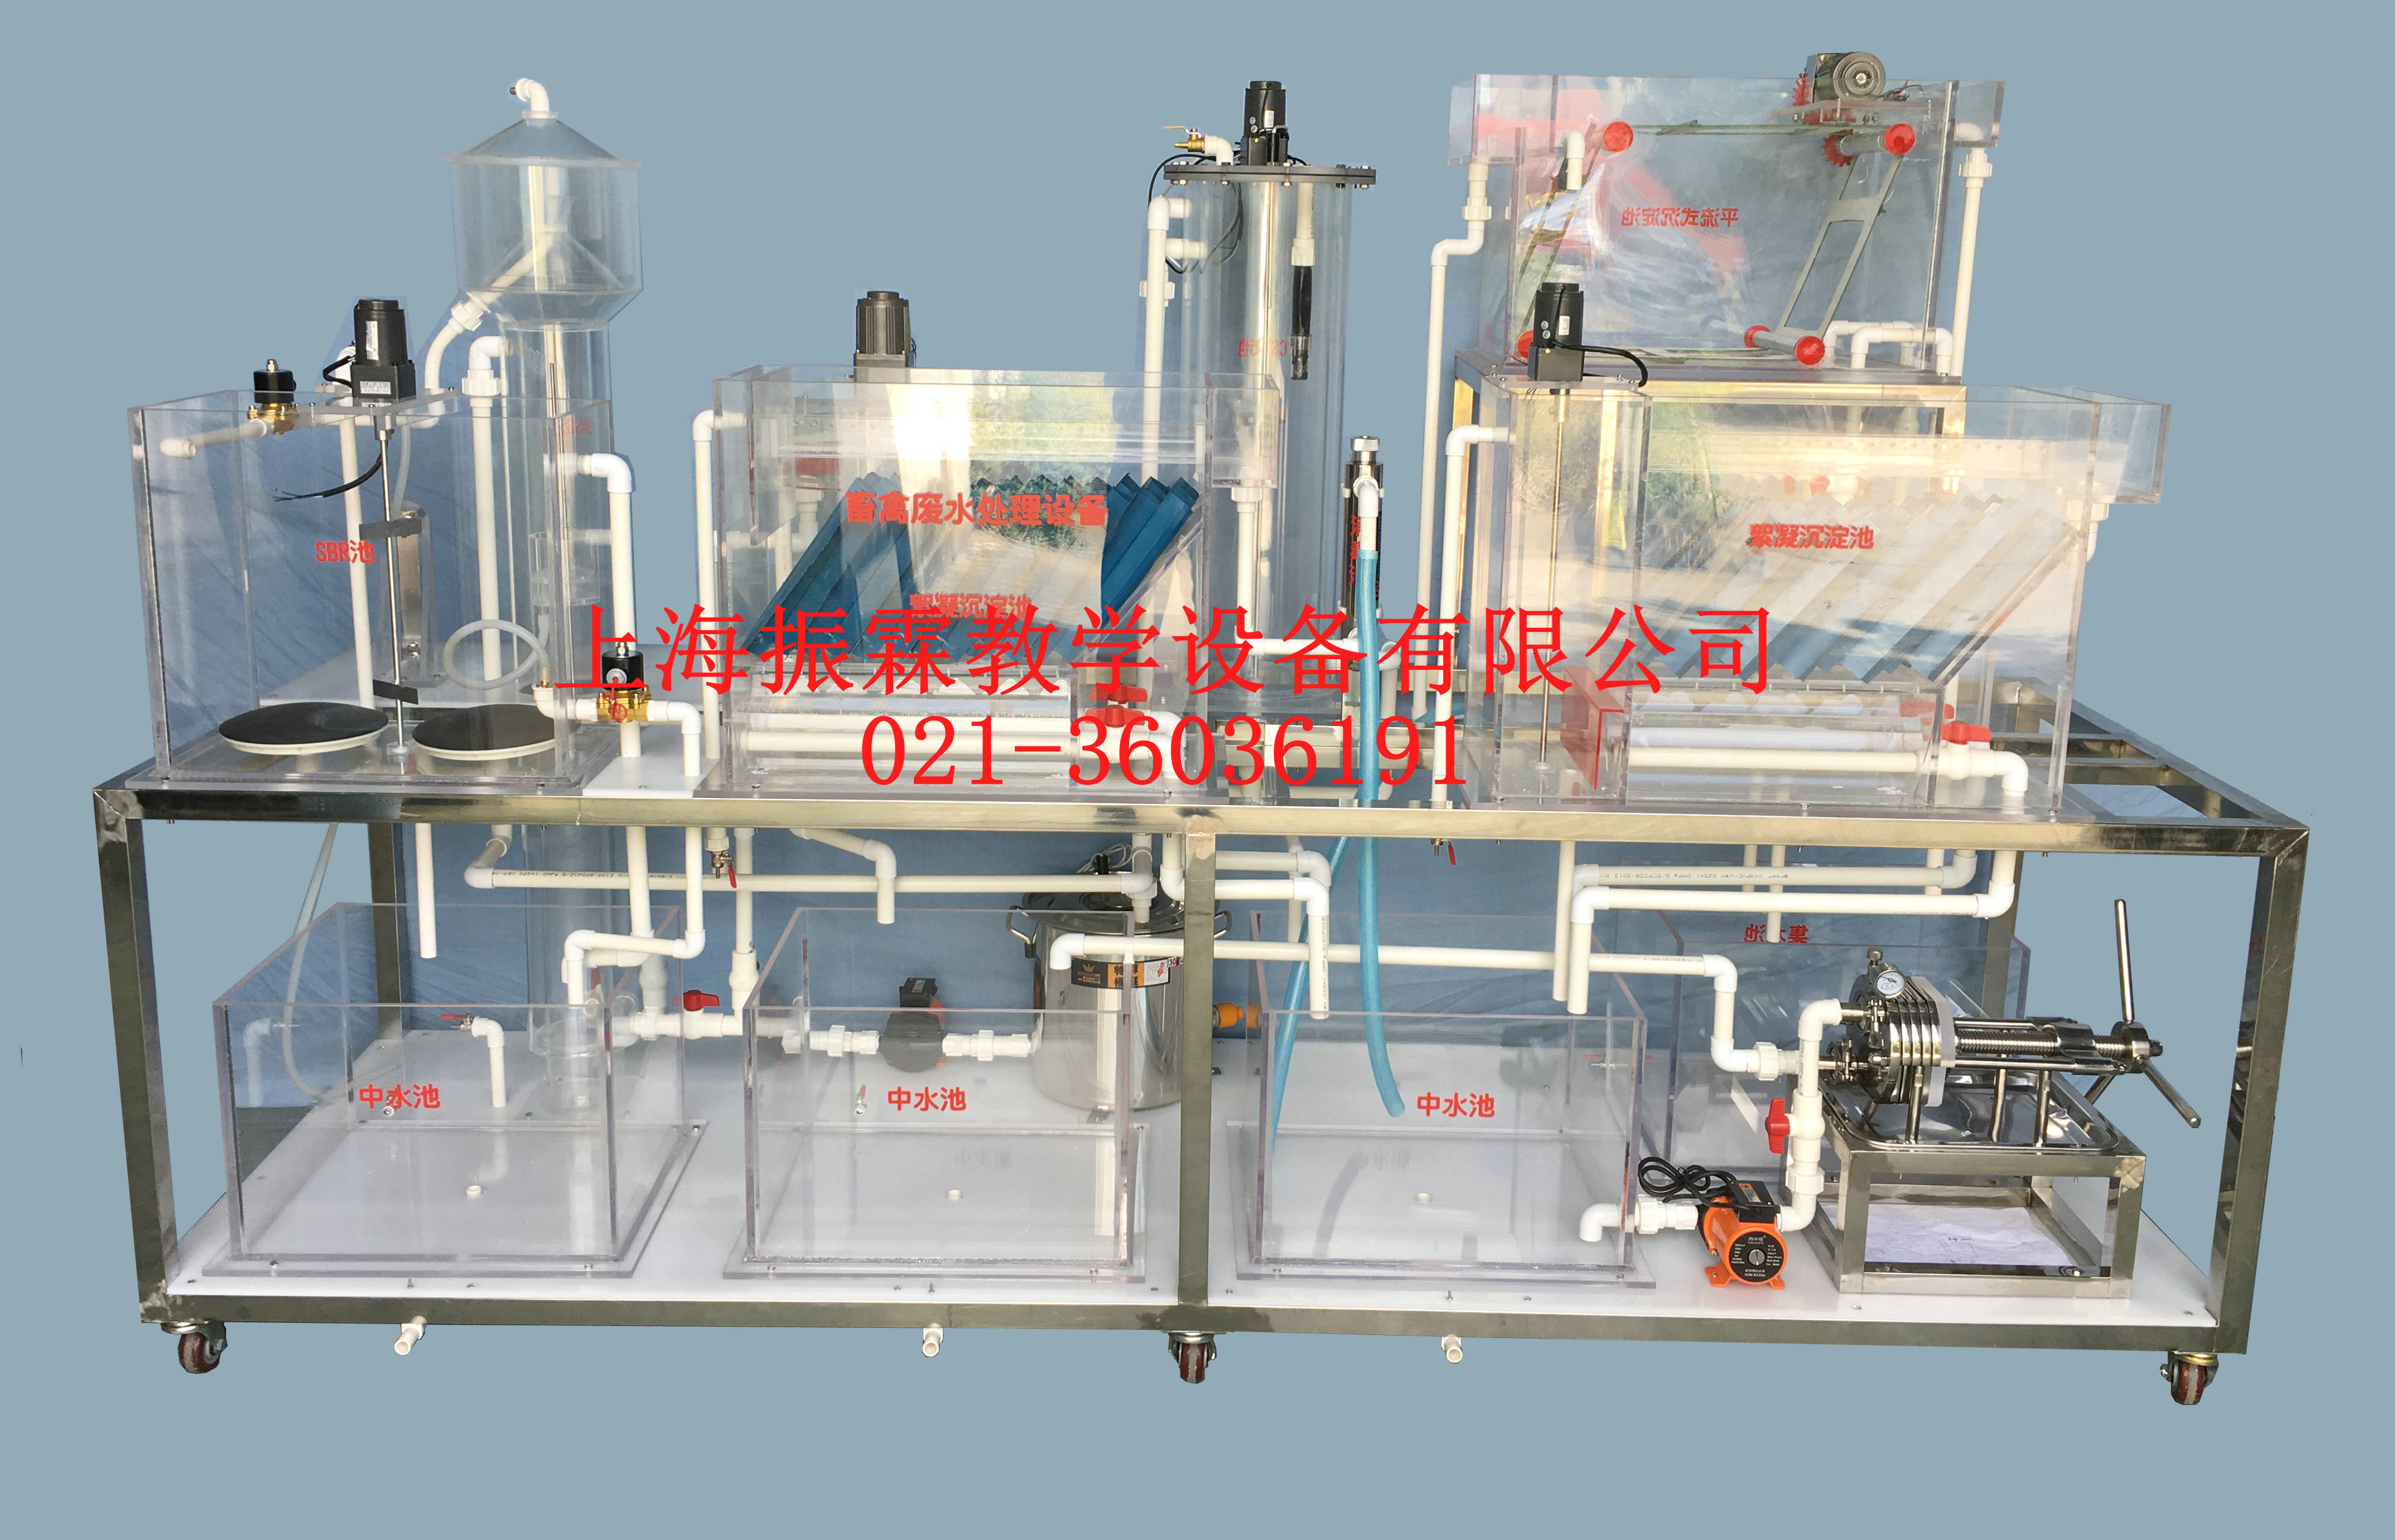 畜禽废水处理实验设备,畜禽废水处理装置,环境工程实验设备--上海振霖公司